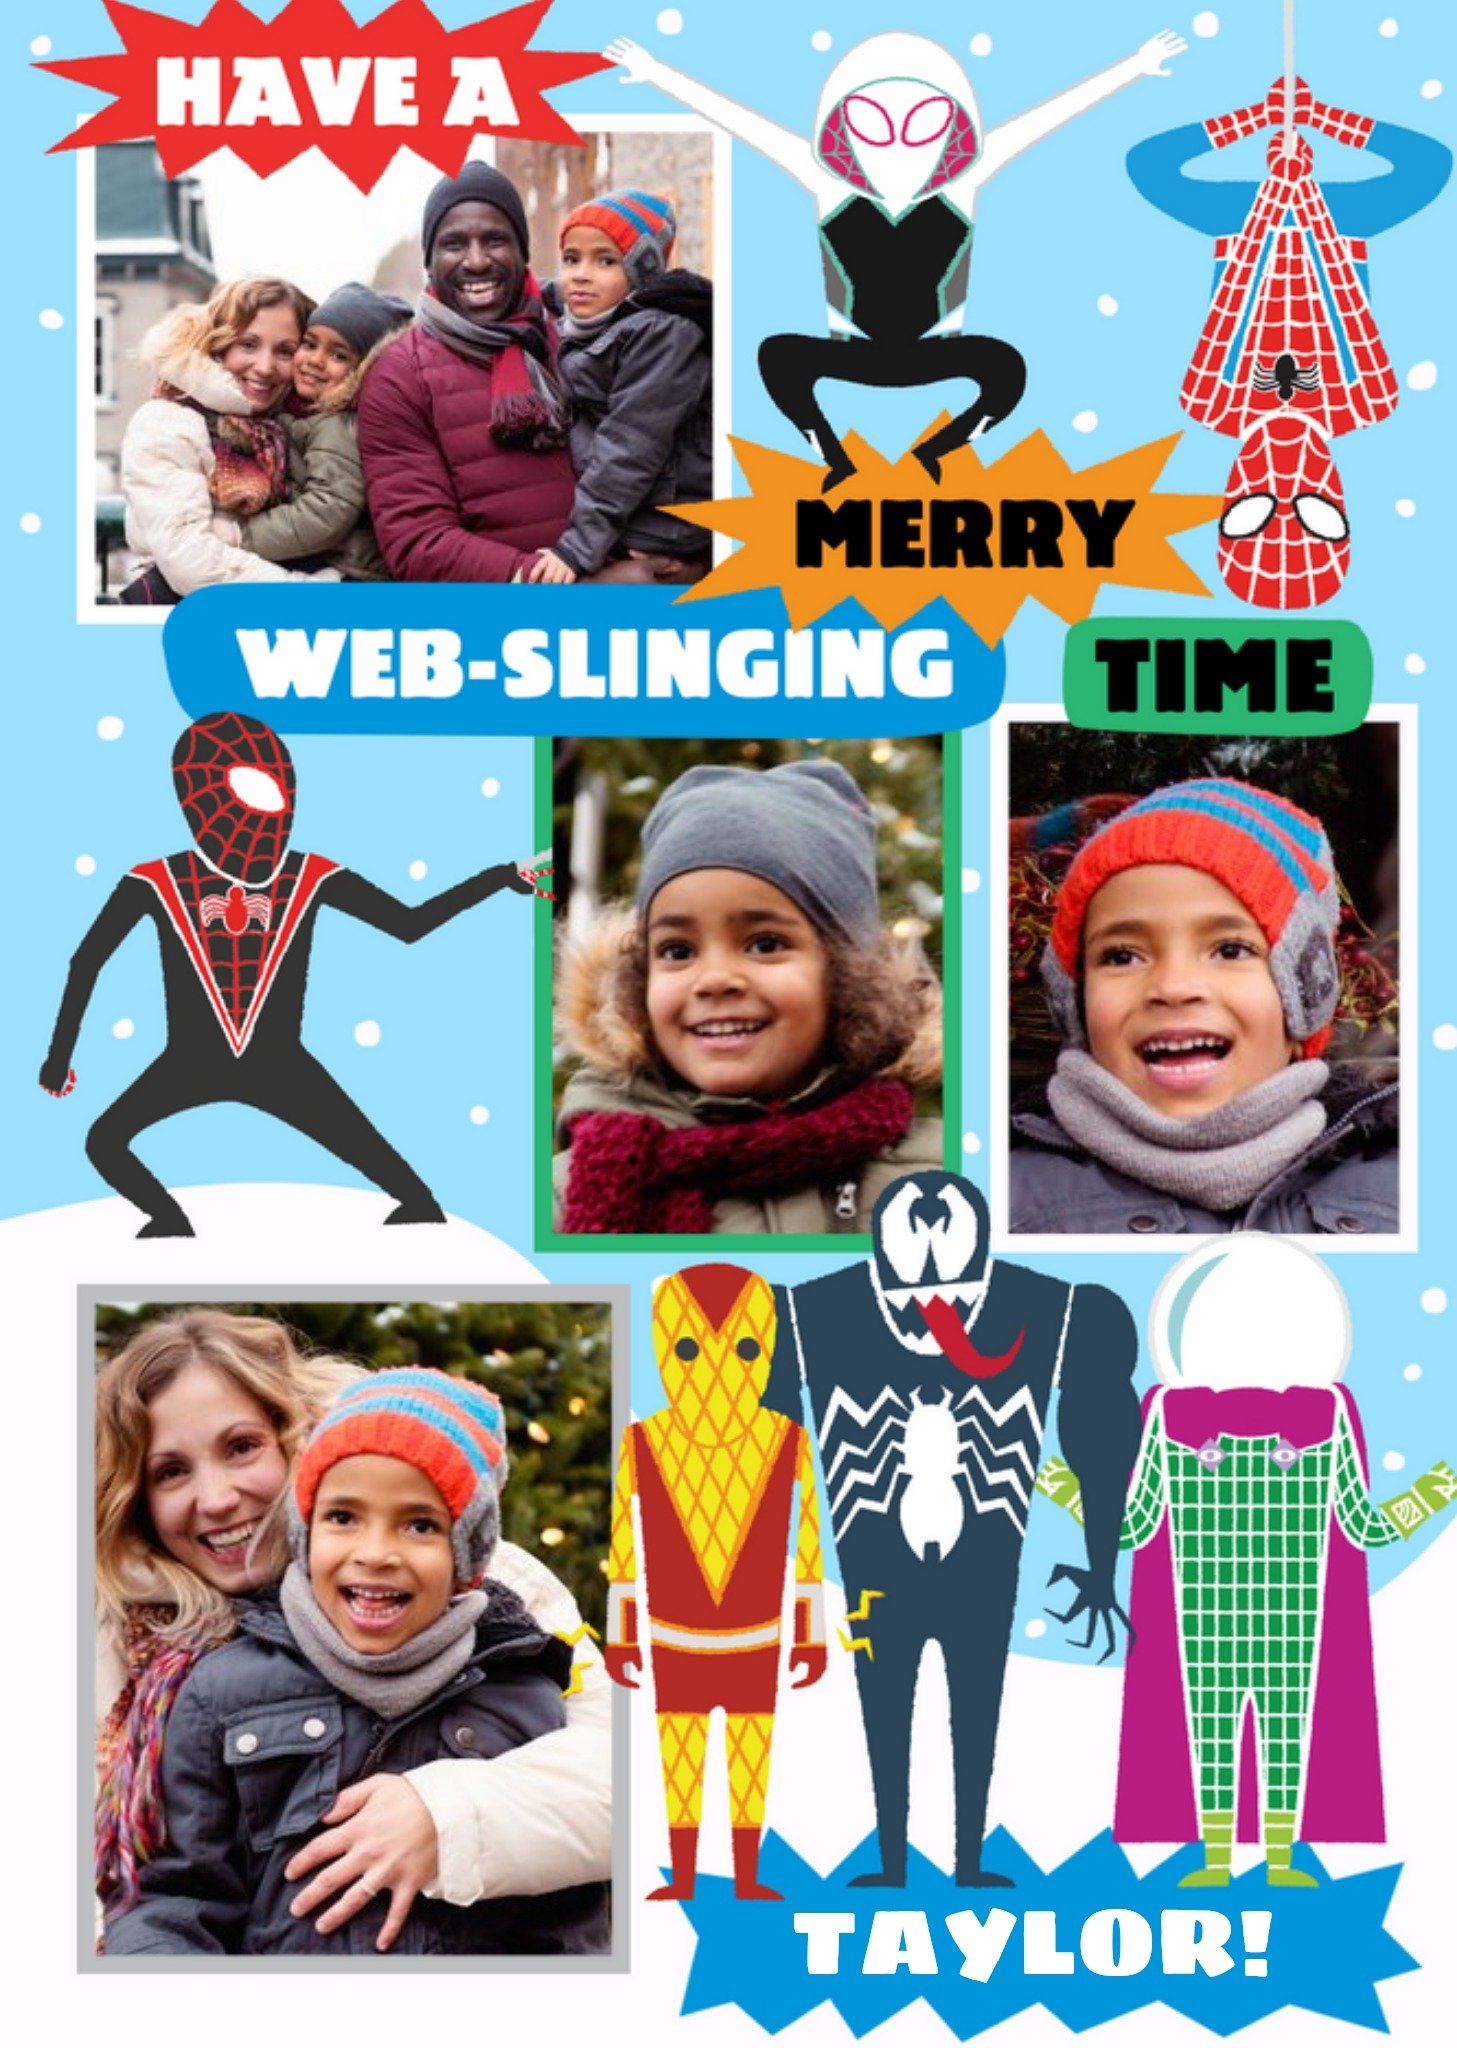 Disney Marvel Spiderman Web Slinging Photo Upload Christmas Card, Large